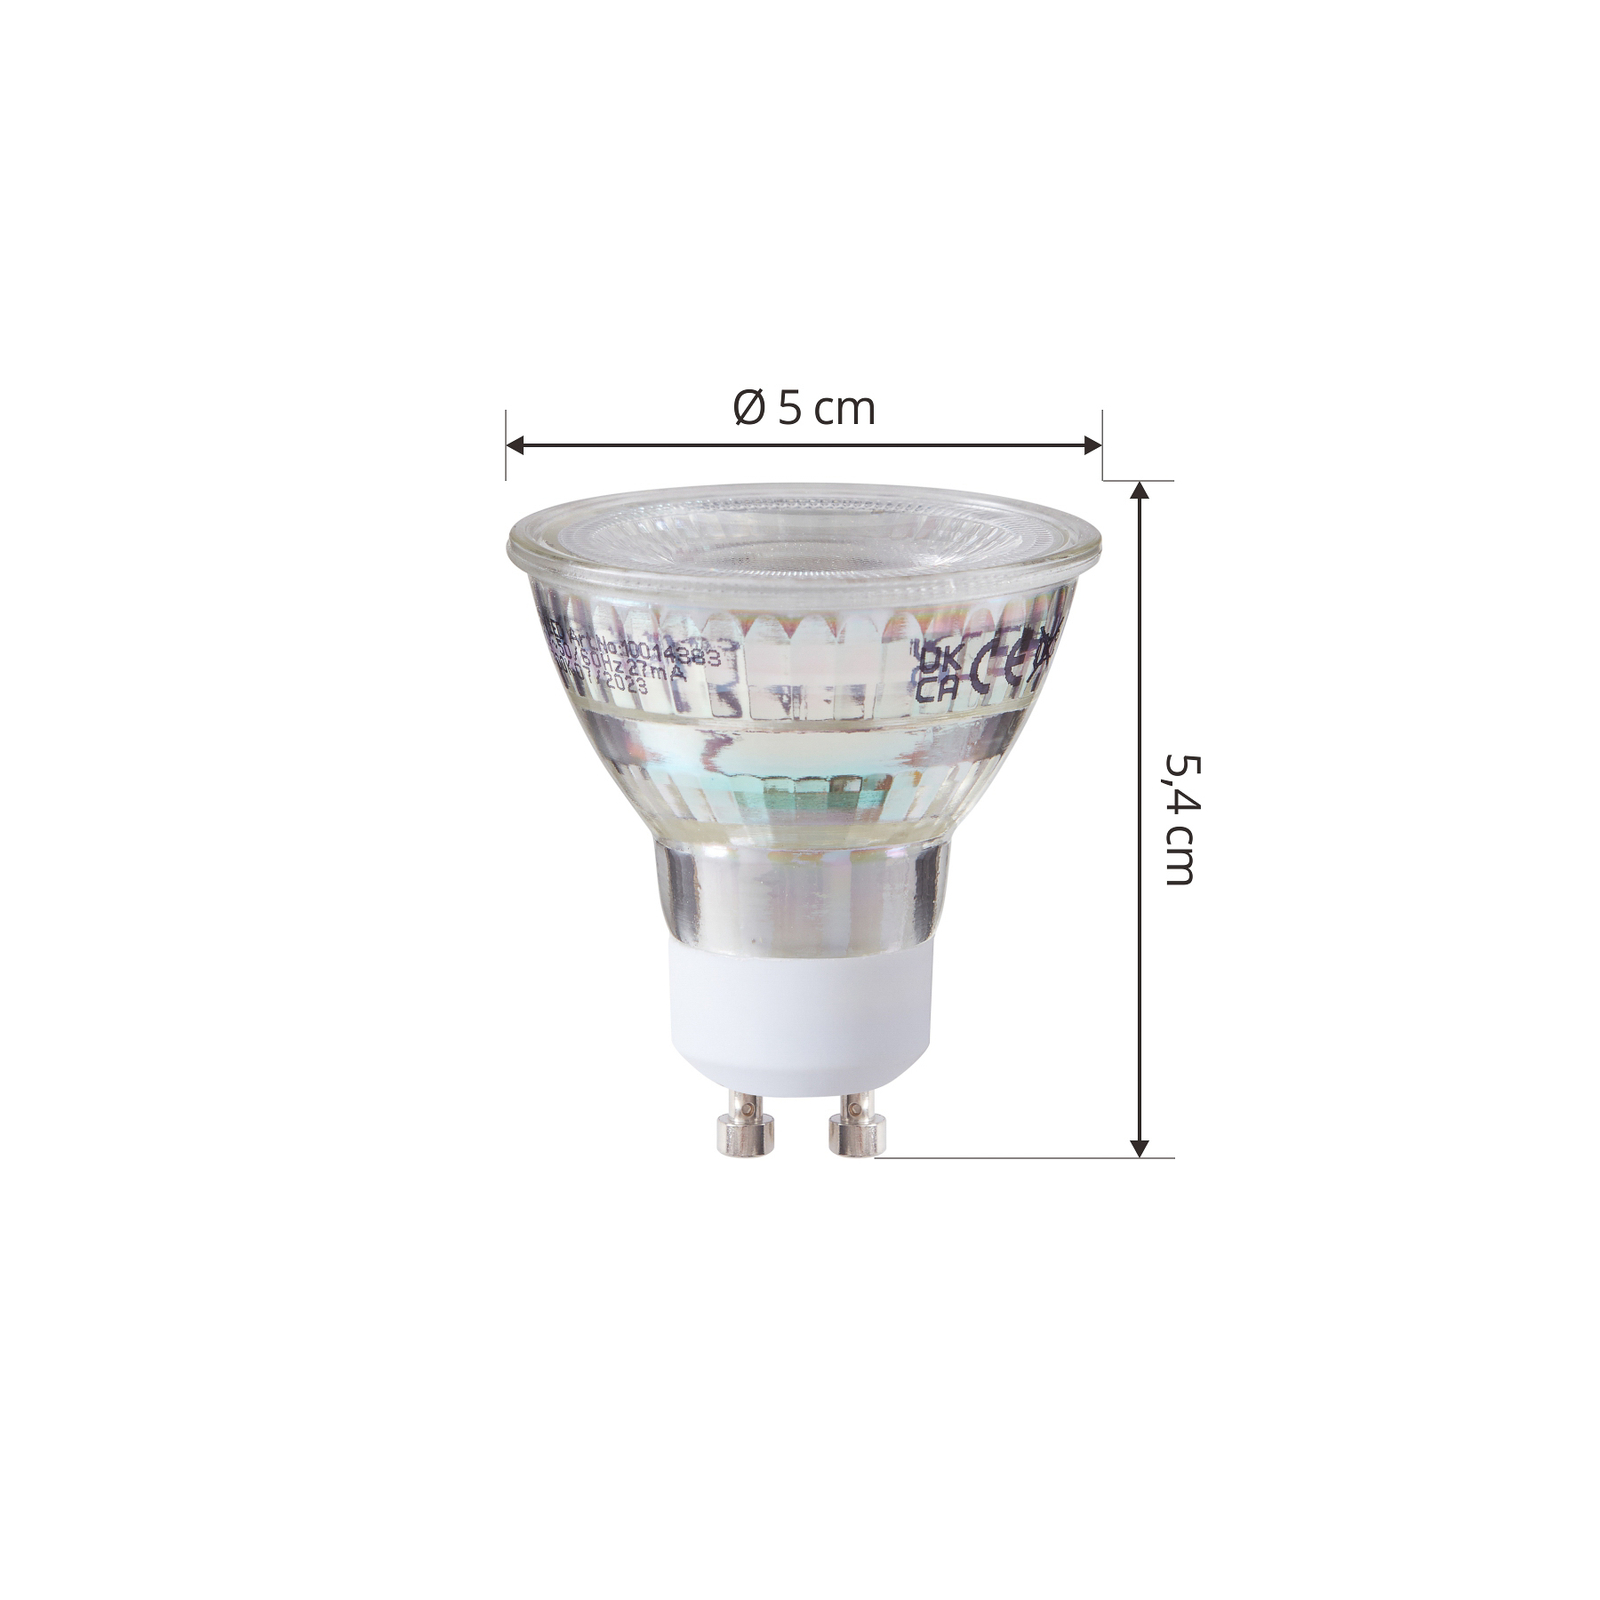 Conjunto de 3 lâmpadas LED Arcchio GU10 2.5W 2700K 450lm em vidro